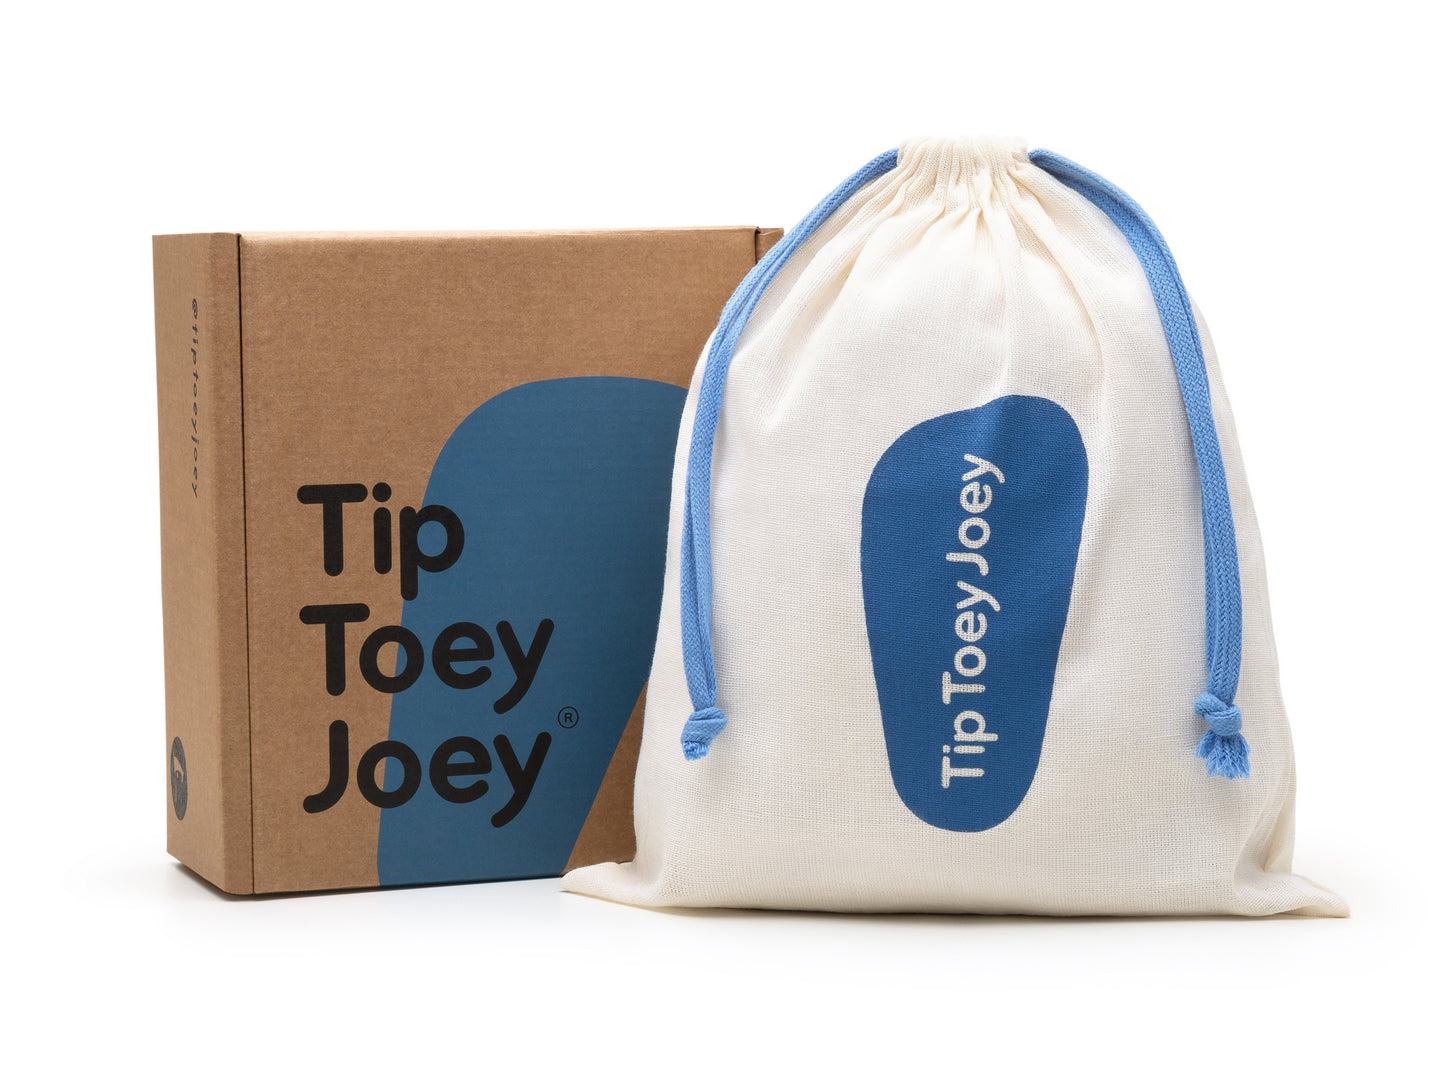 Tip Toey Joey - Ollie Slate Blue (Run & Play)